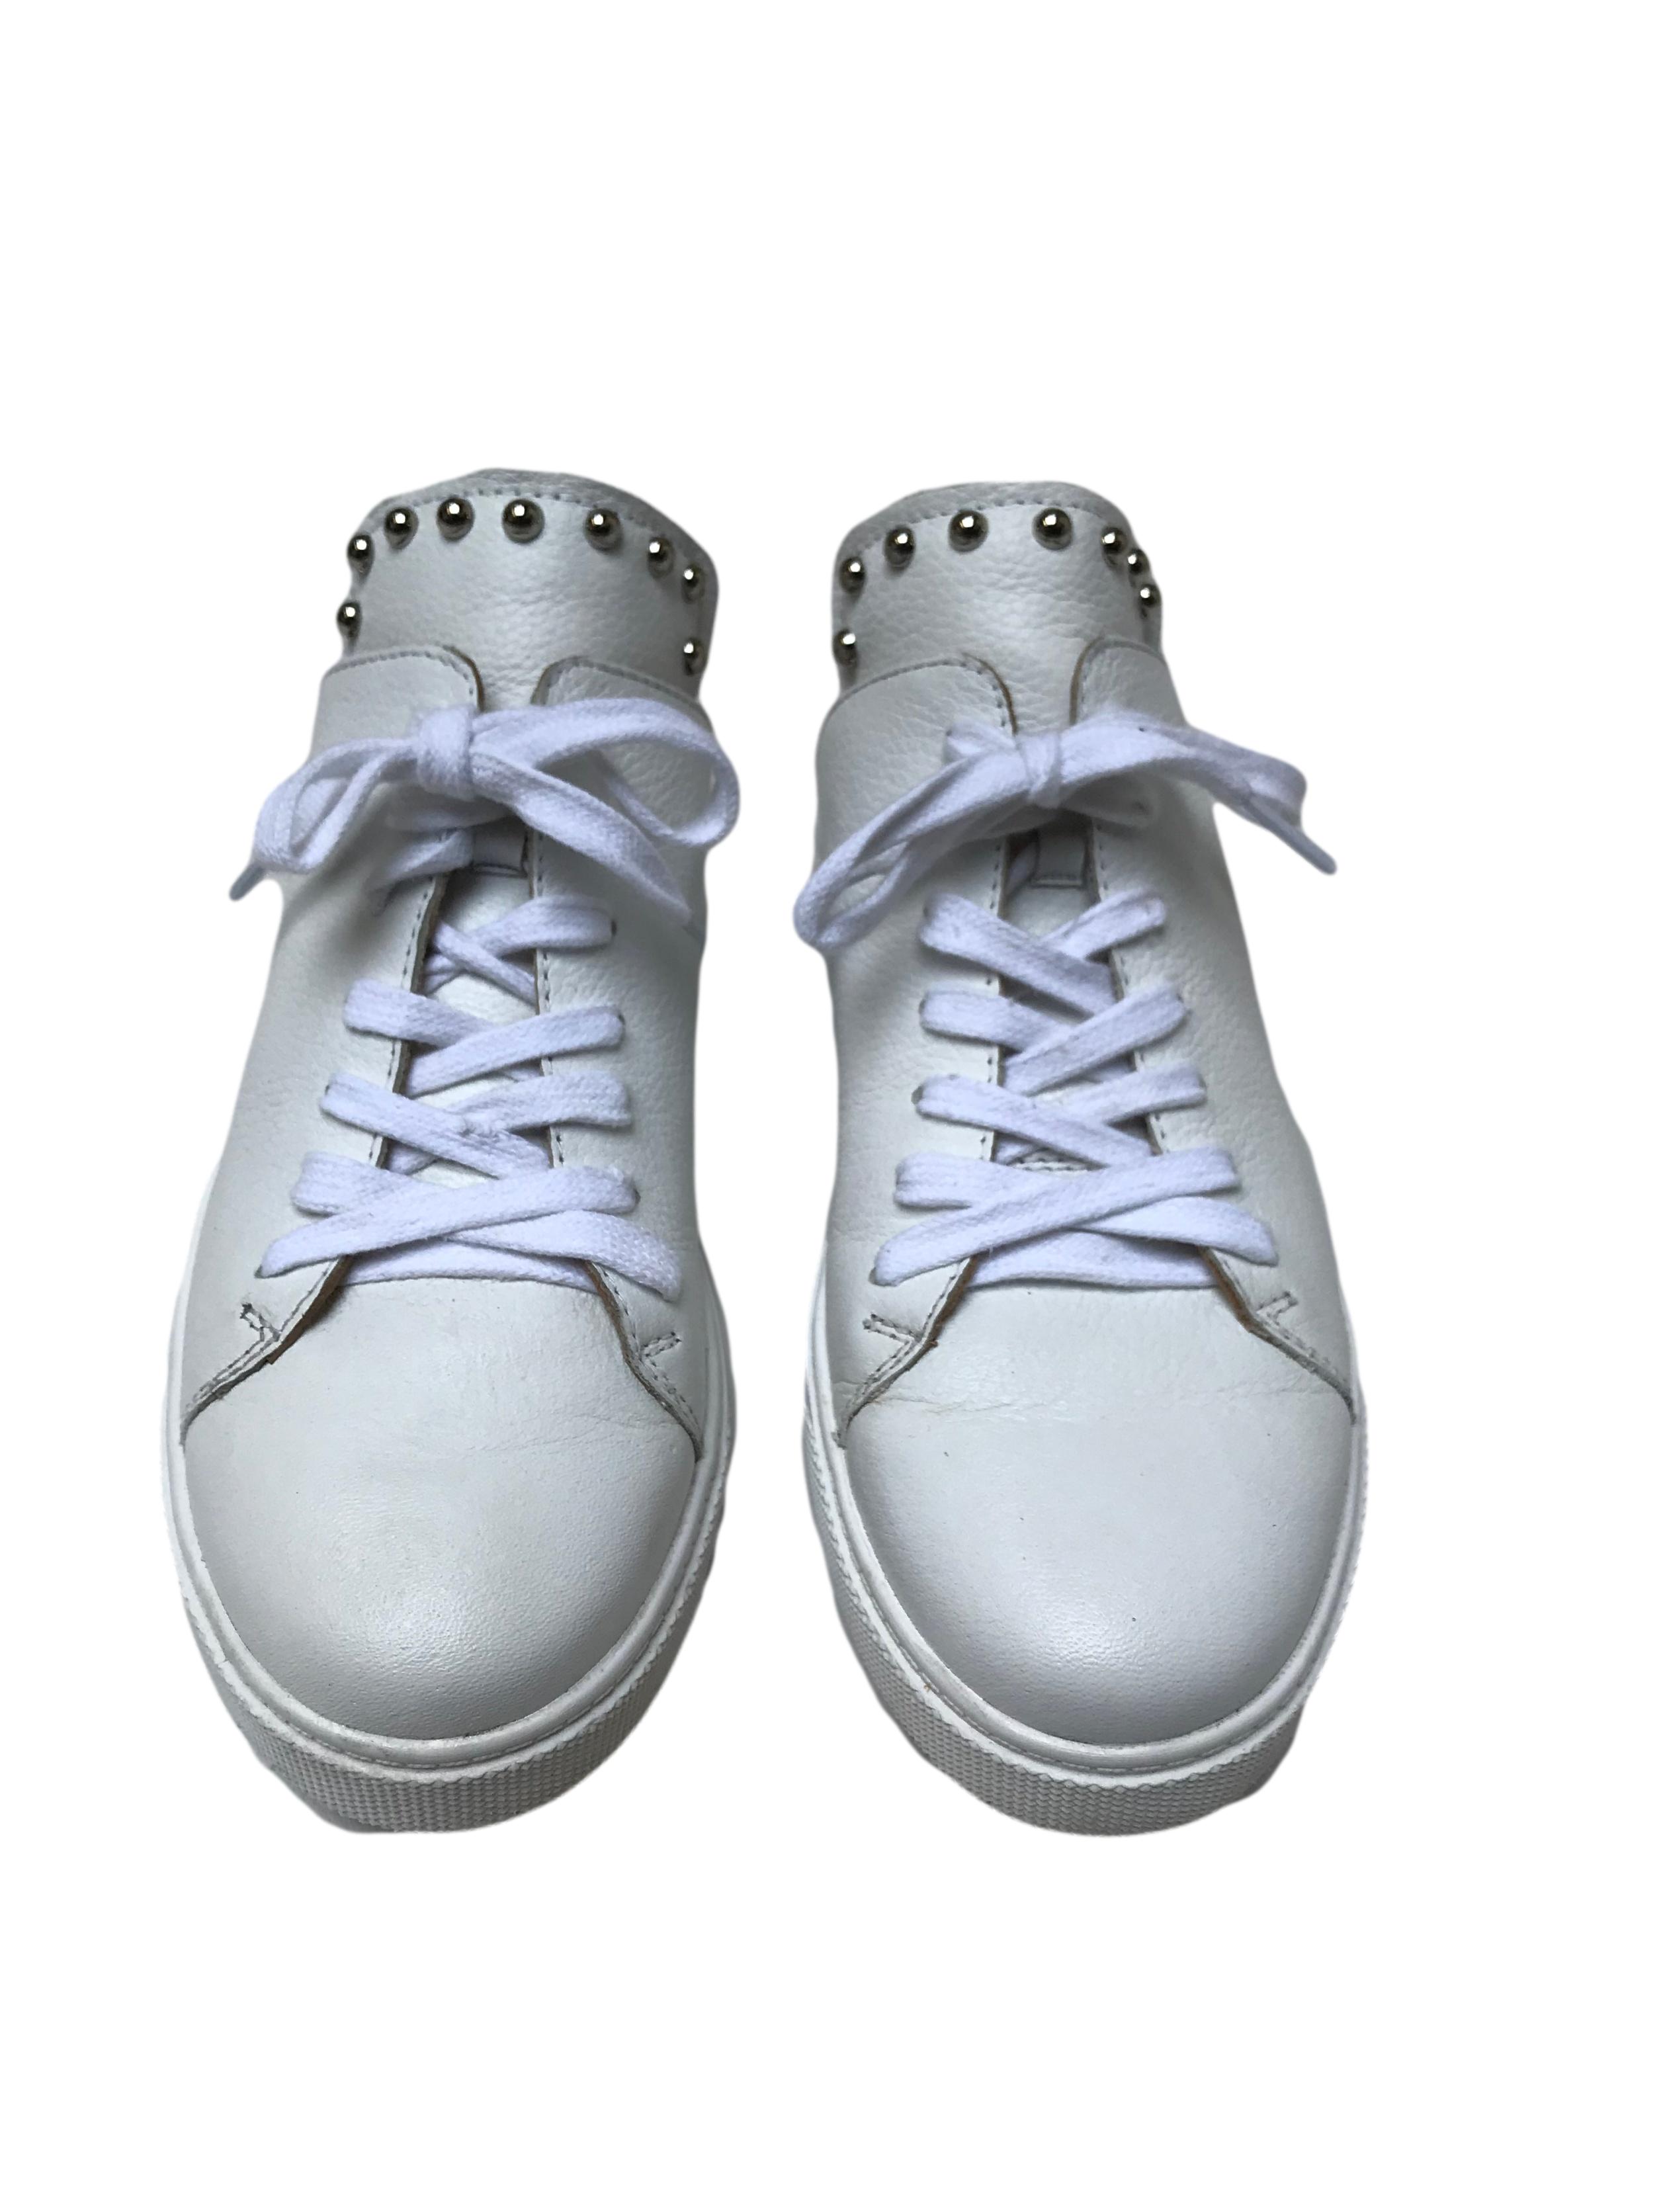 Slippers Donna Cattiva estilo zapatilla de cuero blanco con aplicaciones plateadas en la lengüeta. Estado 8.5/10. Precio original S/ 300